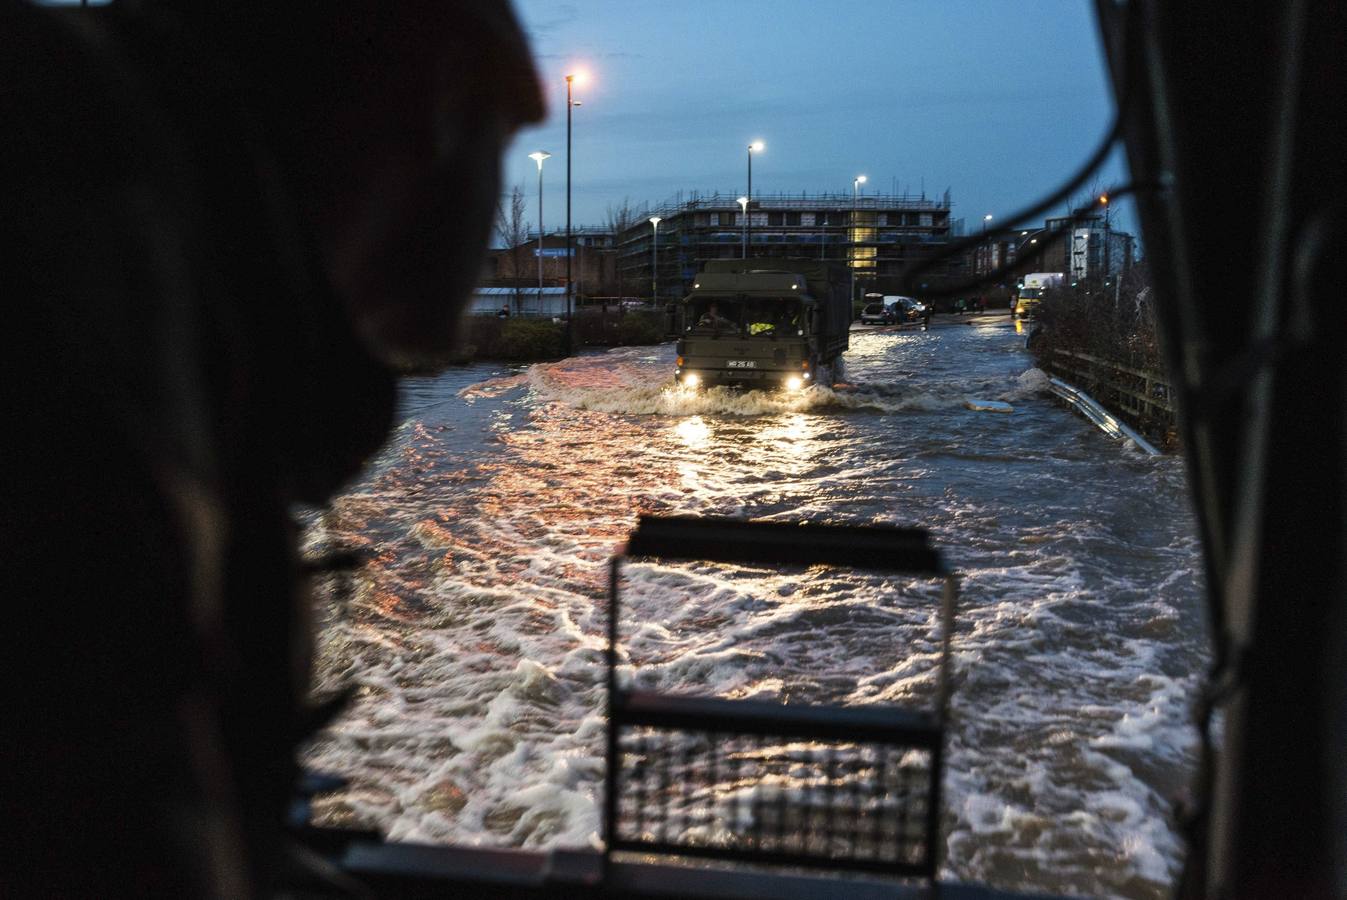 Fotografía facilitada por el Ministerio británico de defensa que muestra vehículos militares por las calles inundadas de York